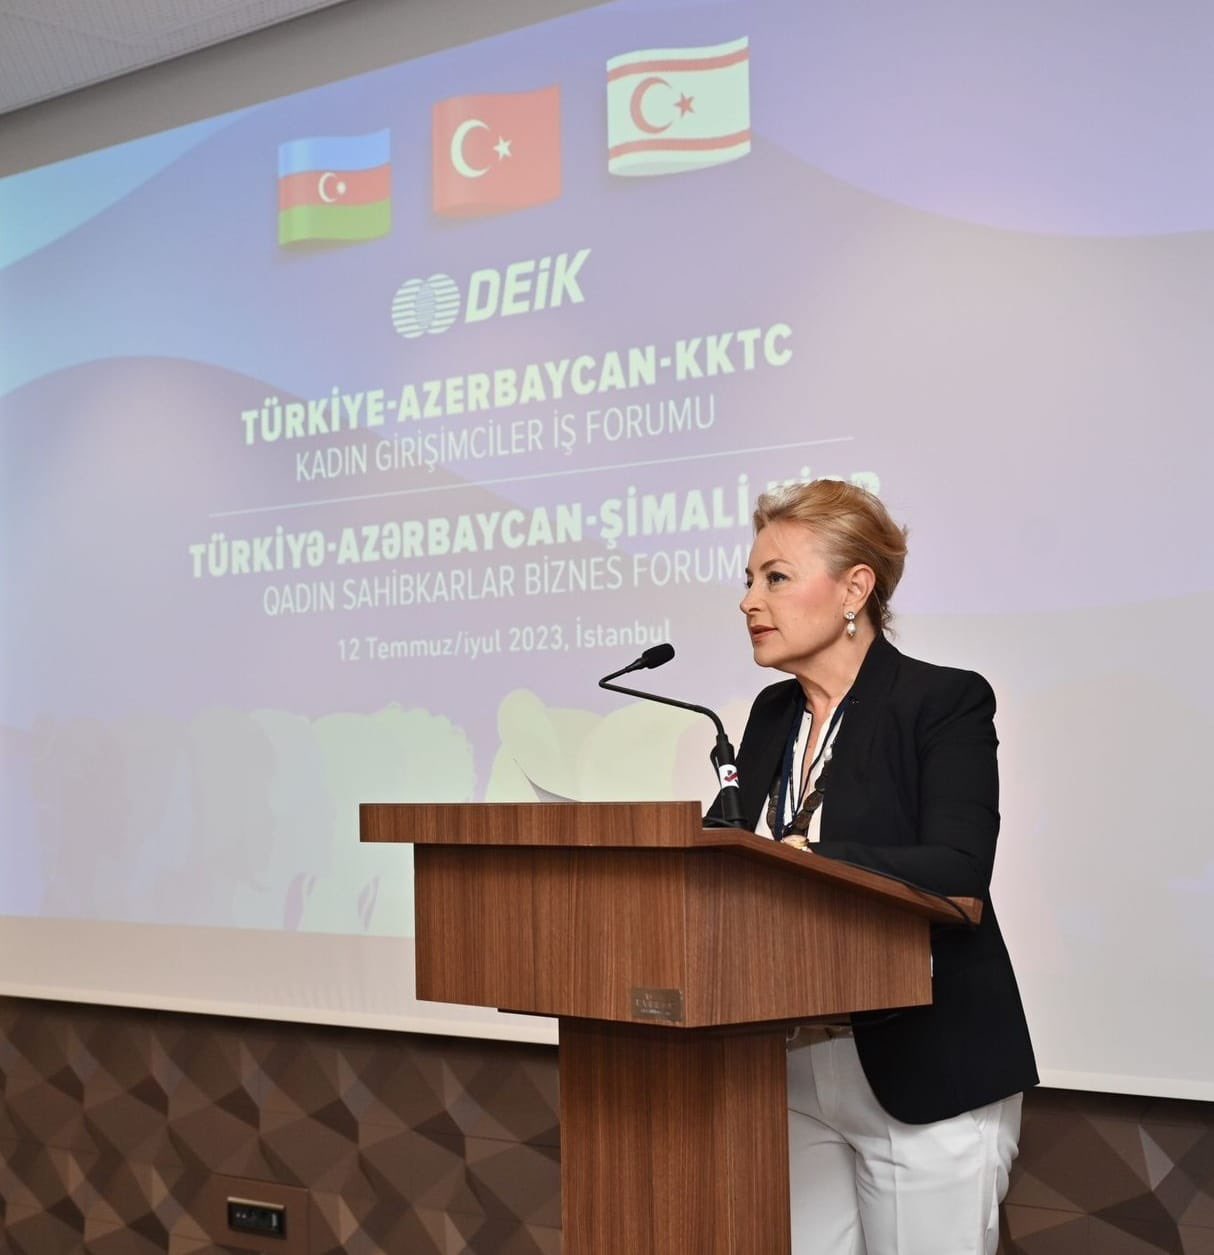 Türkiye-Azerbaycan-KKTC Kadın Girişimciler İş Forumu 